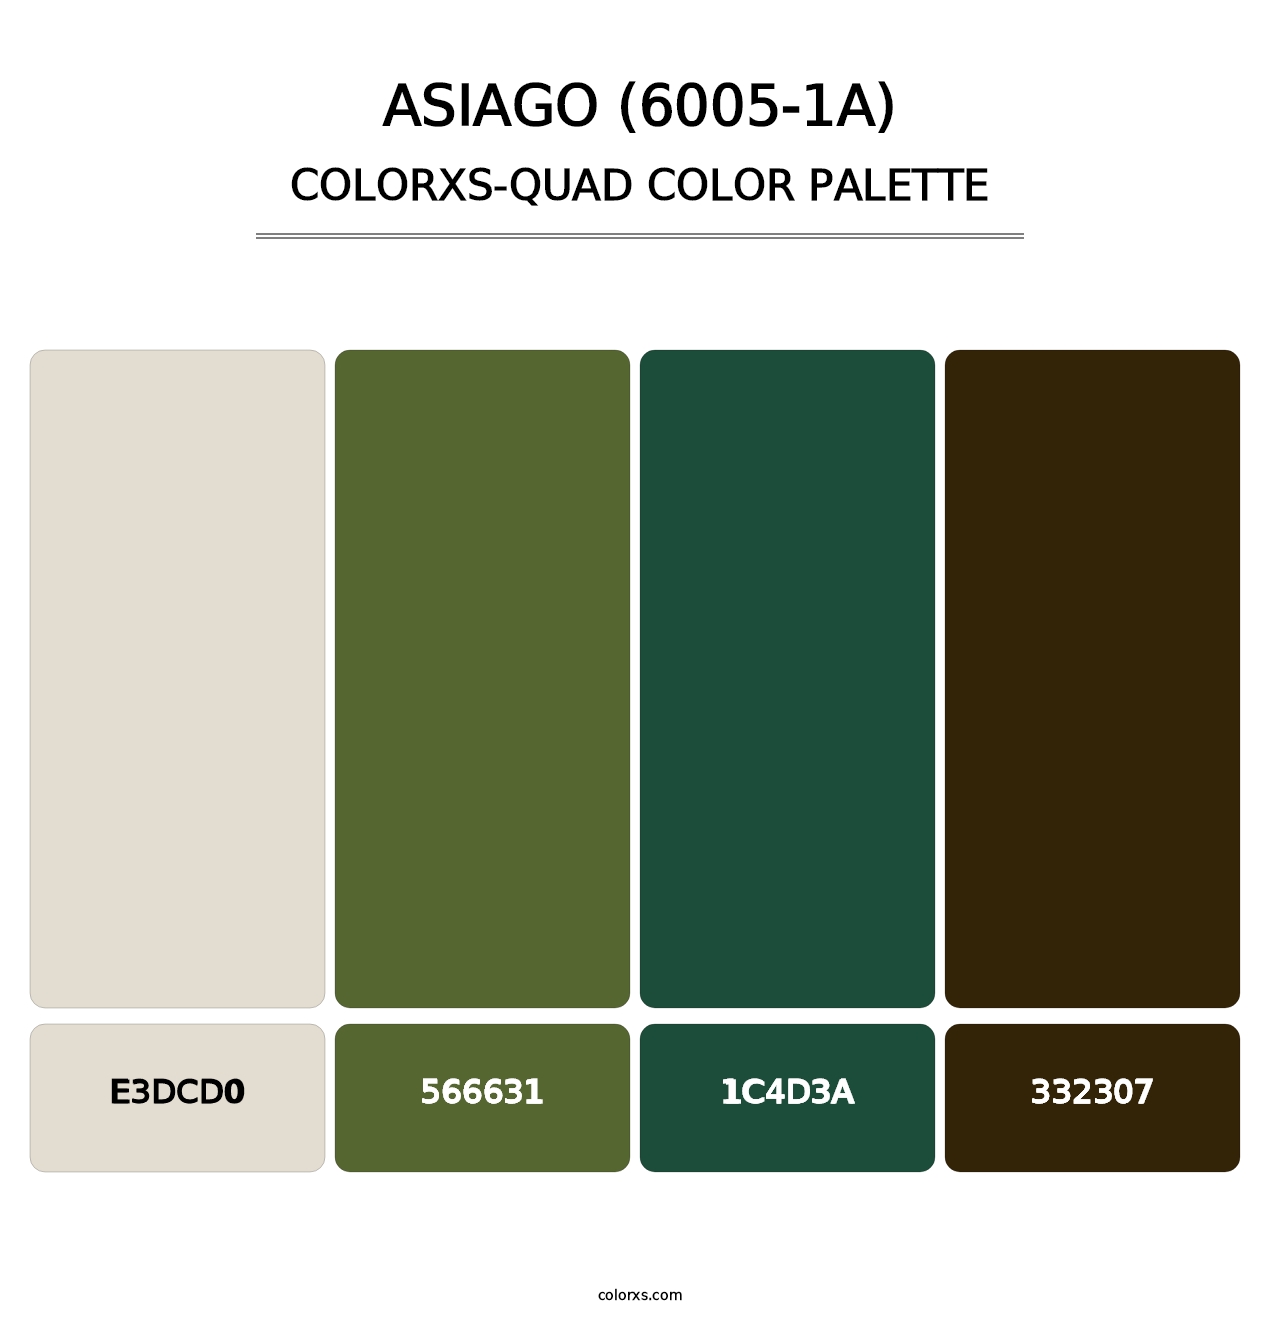 Asiago (6005-1A) - Colorxs Quad Palette